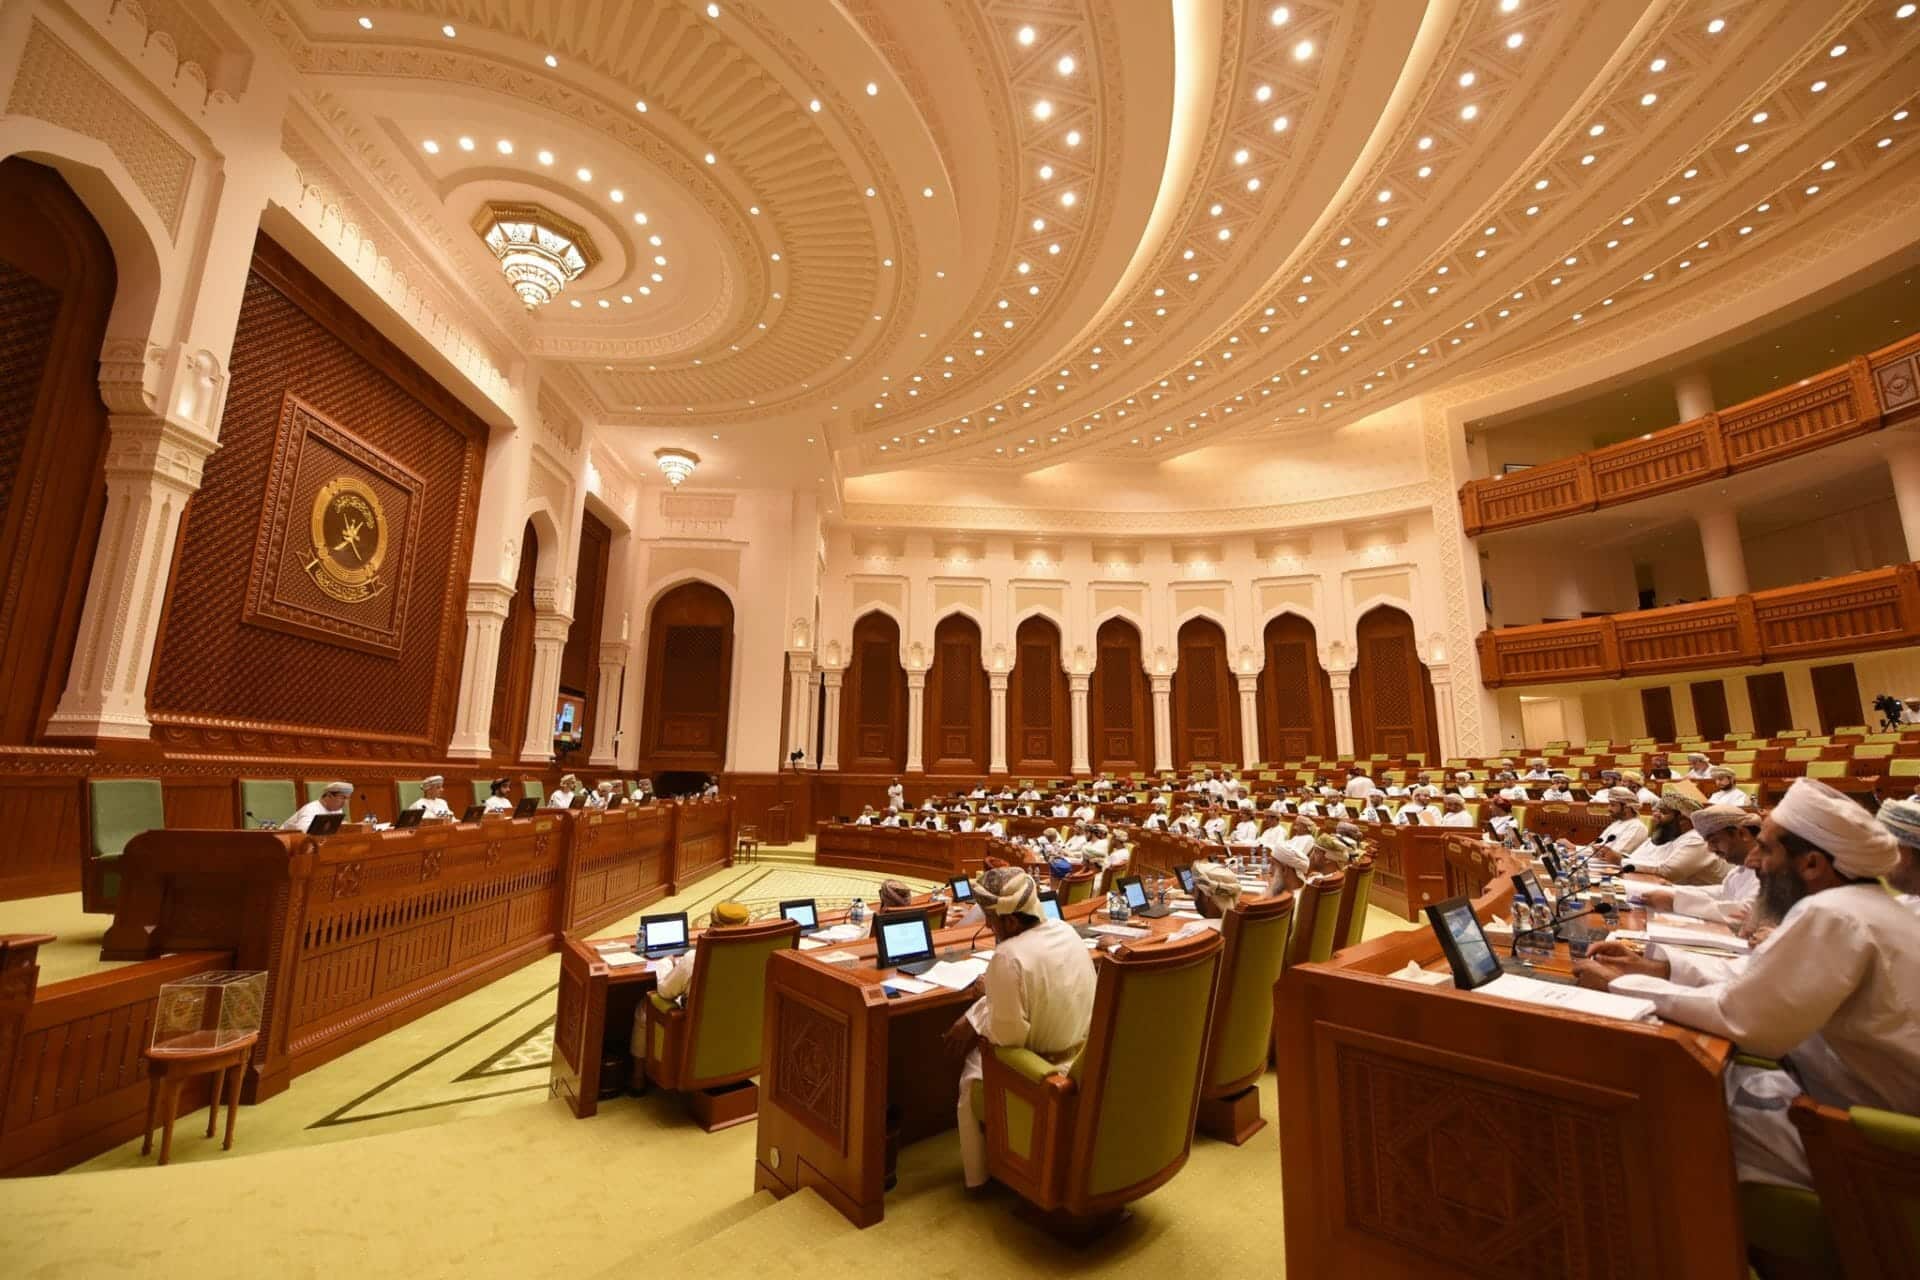 سرية جلسات التصويت في مجلس الشورى العماني watanserb.com